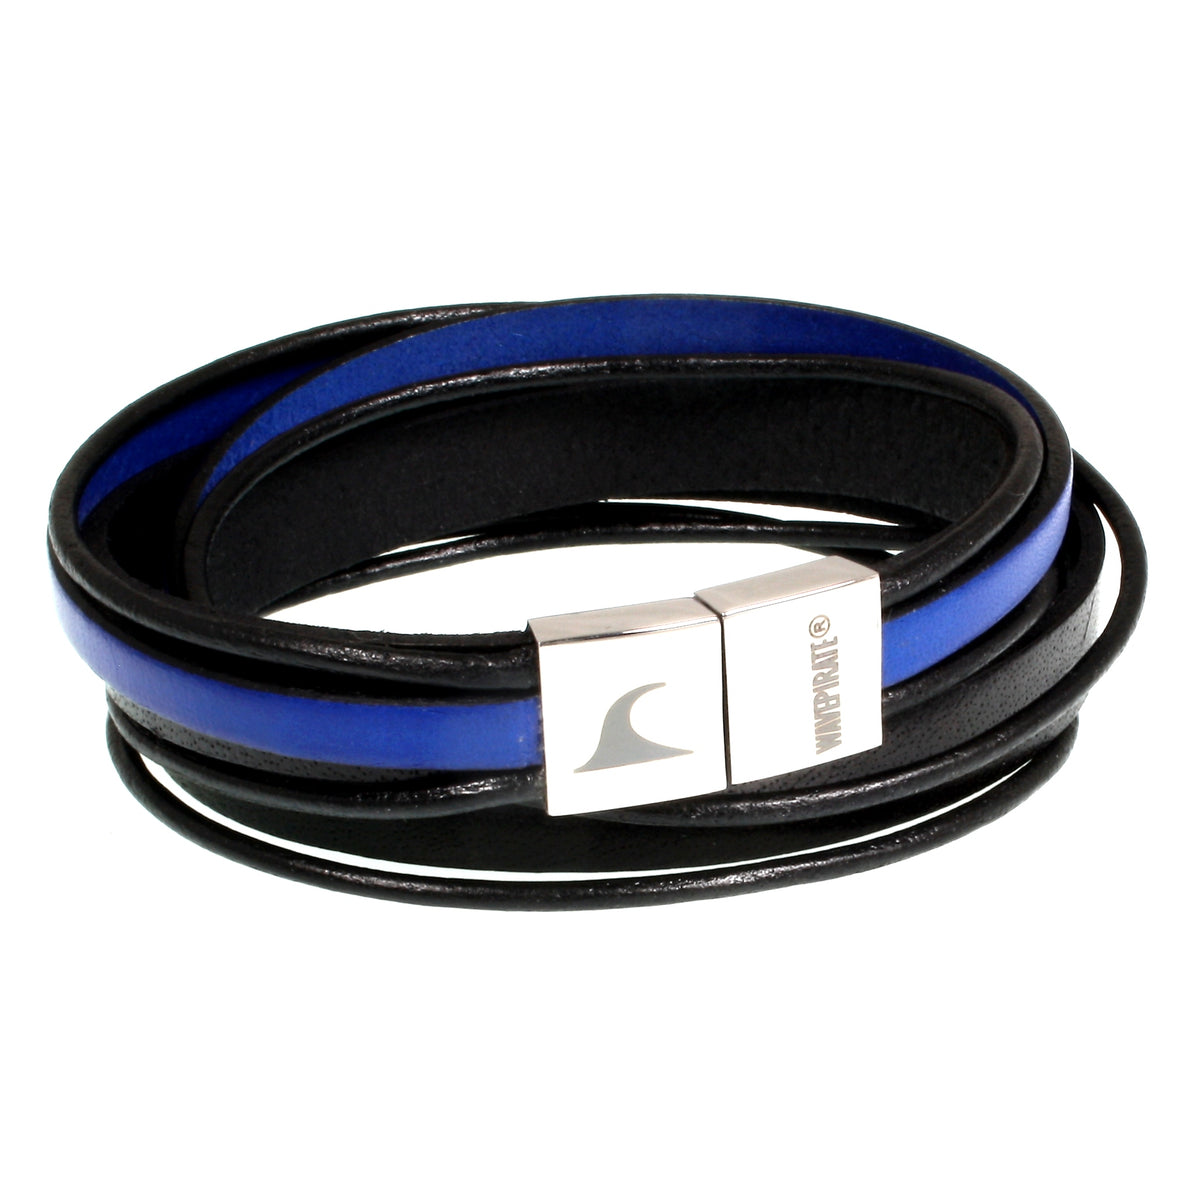 Herren-Leder-Armband-Rockstar-schwarz-blau-flach-Edelstahlverschluss-vorn-wavepirate-shop